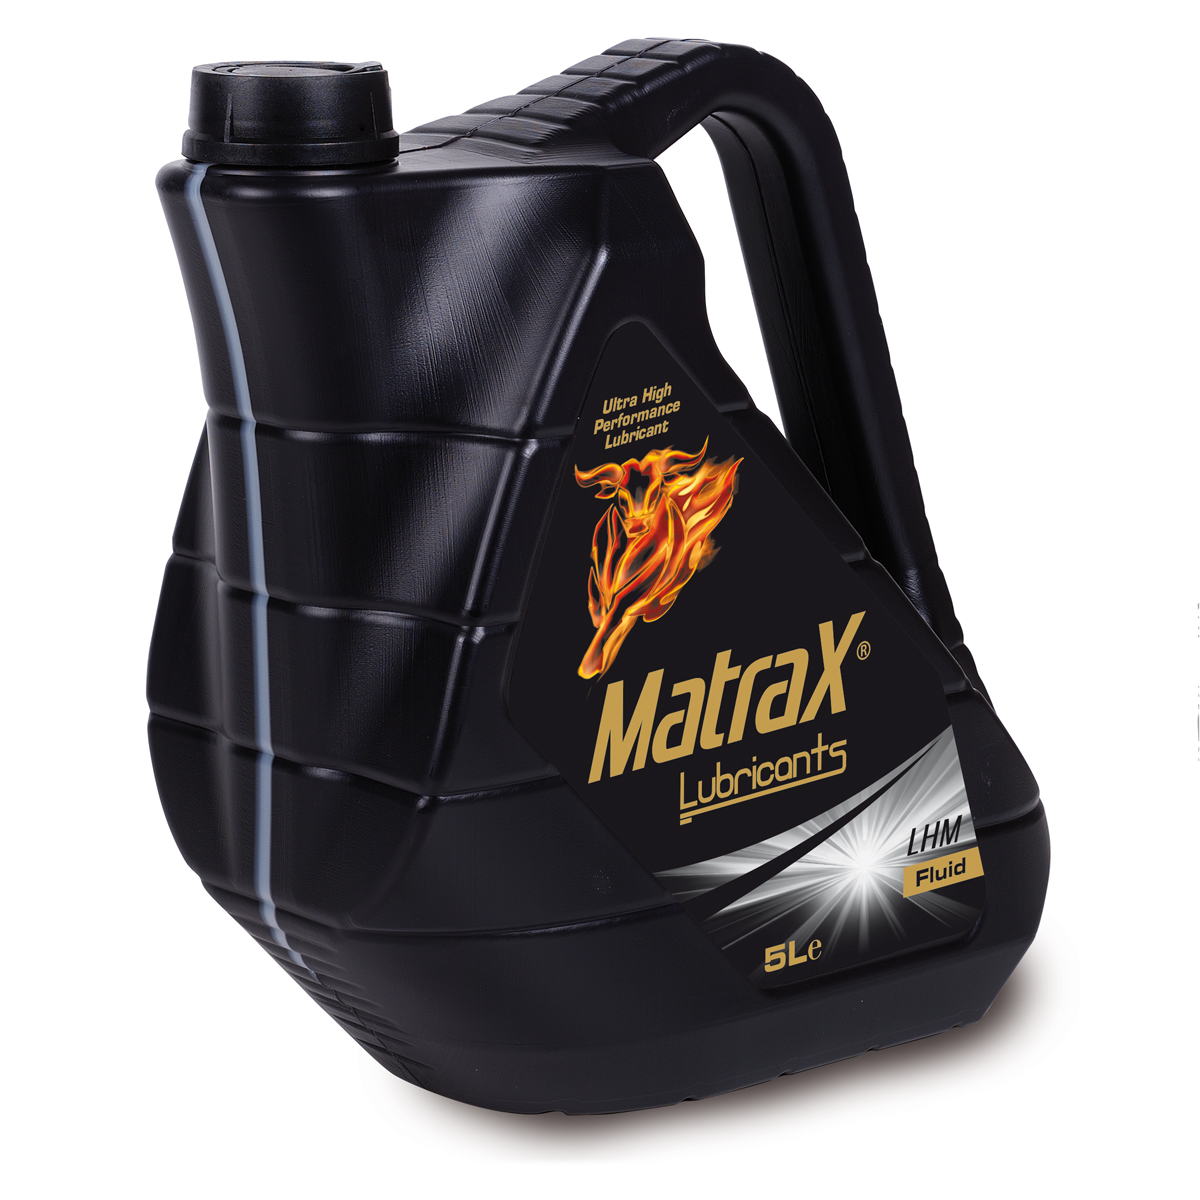 matrax-lubricants-LHM-Fluid-5l